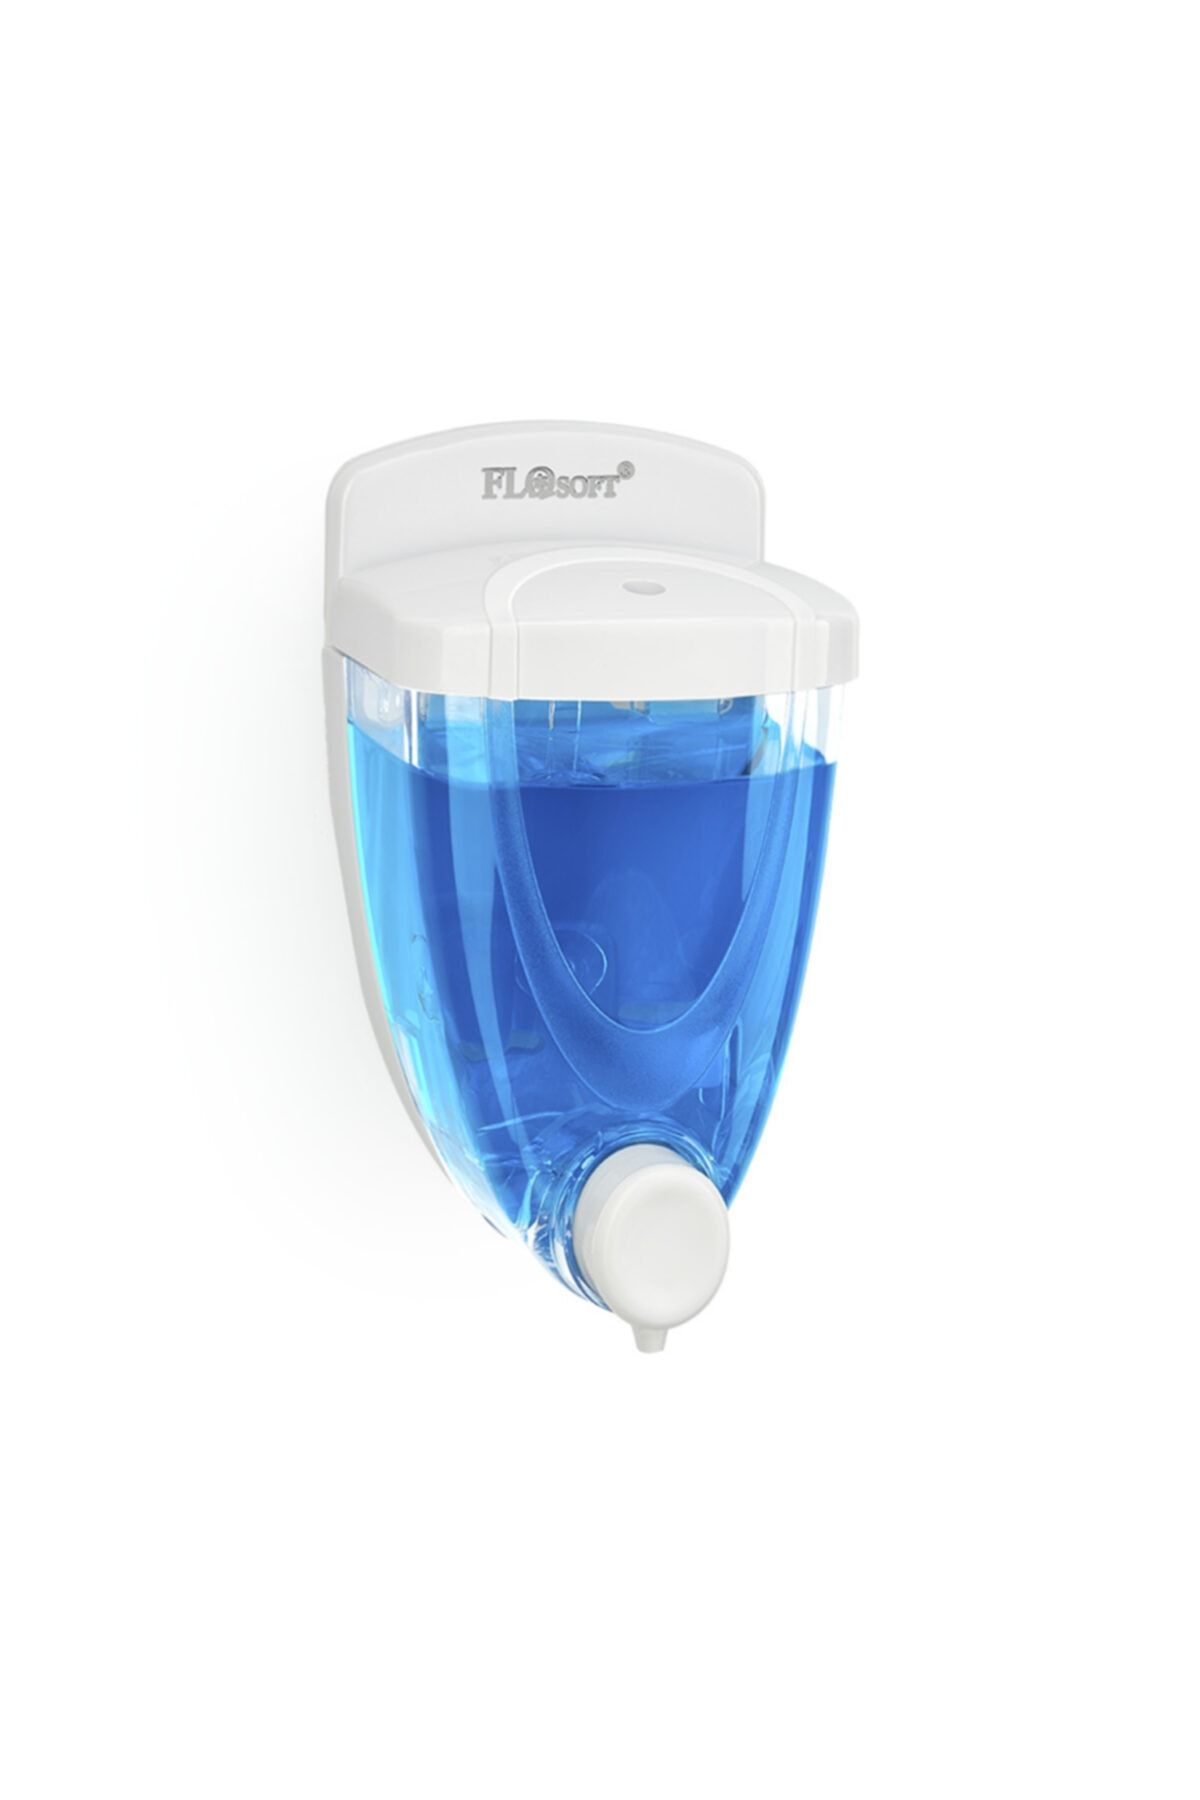 Flosoft Sıvı Sabunluk Ve Şampuan Makinesi 350 ml F015